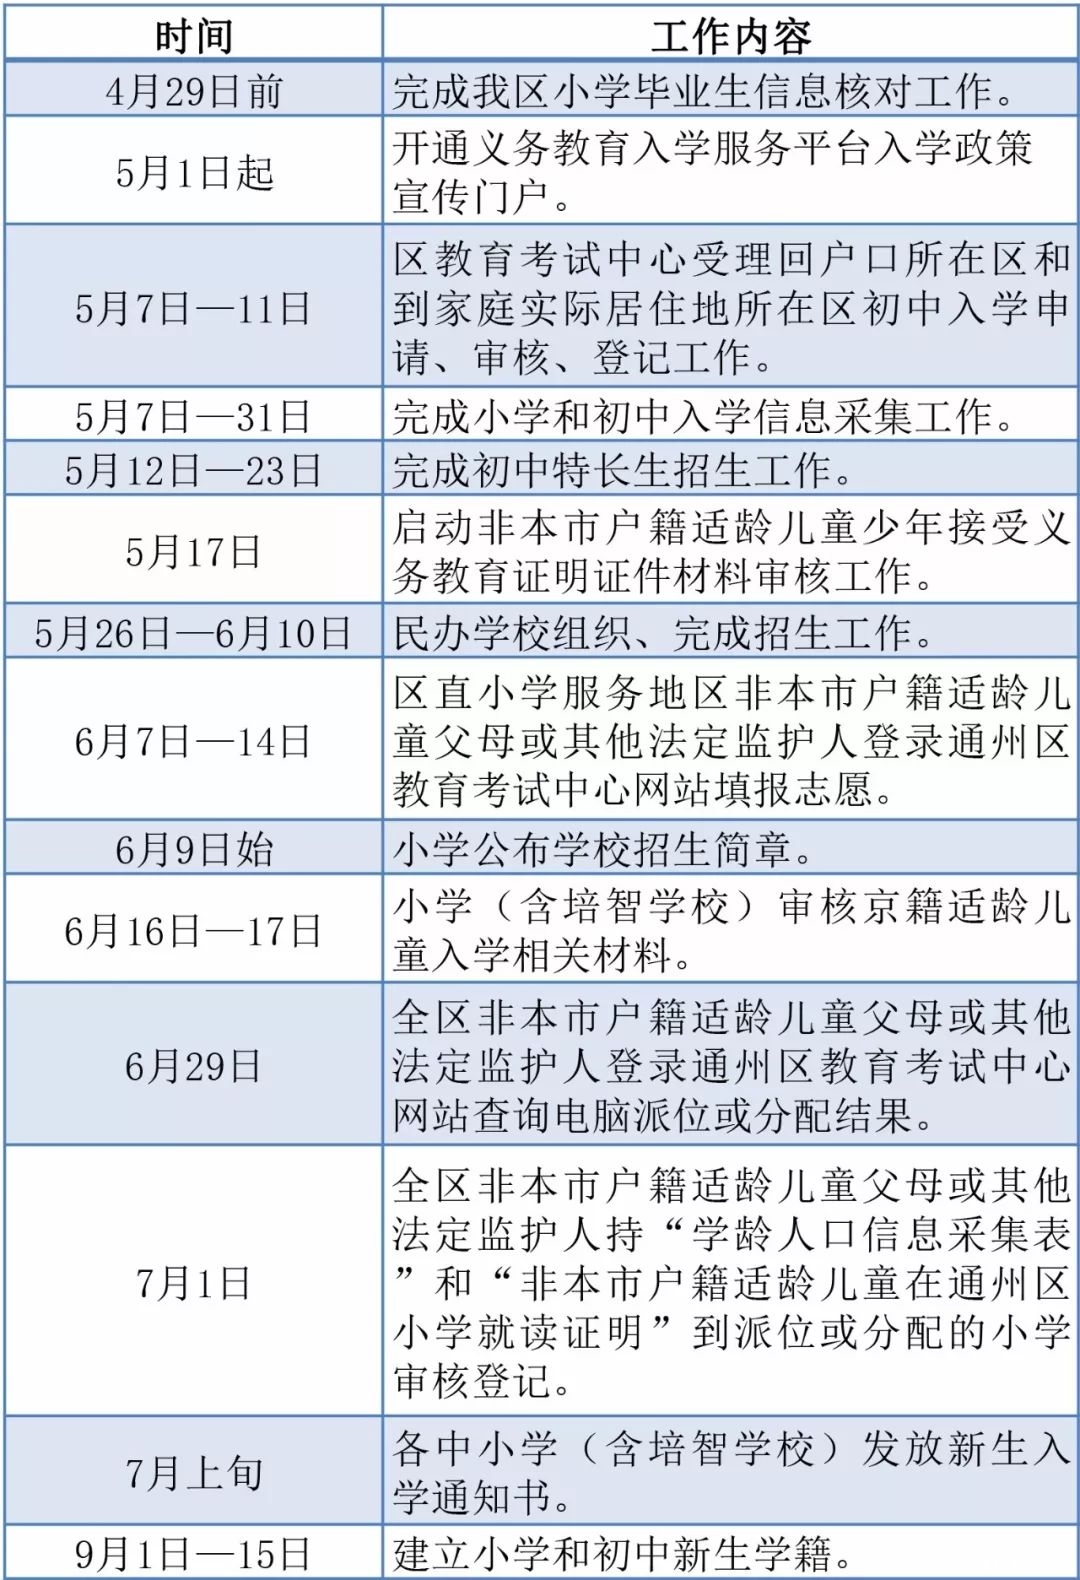 2018年北京通州区义务教育入学政策发布1